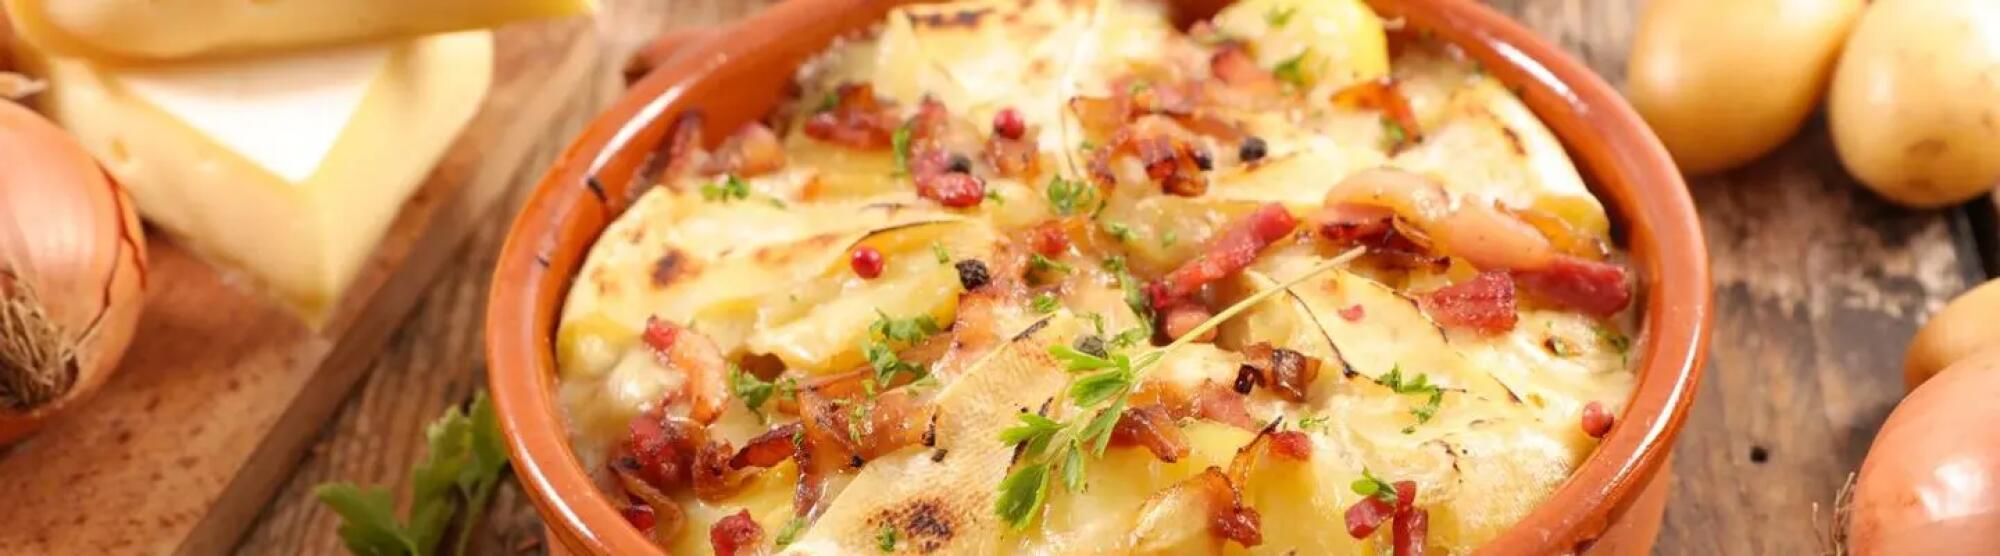 Recette : Pommes de terre au reblochon : notre recette de tartiflette